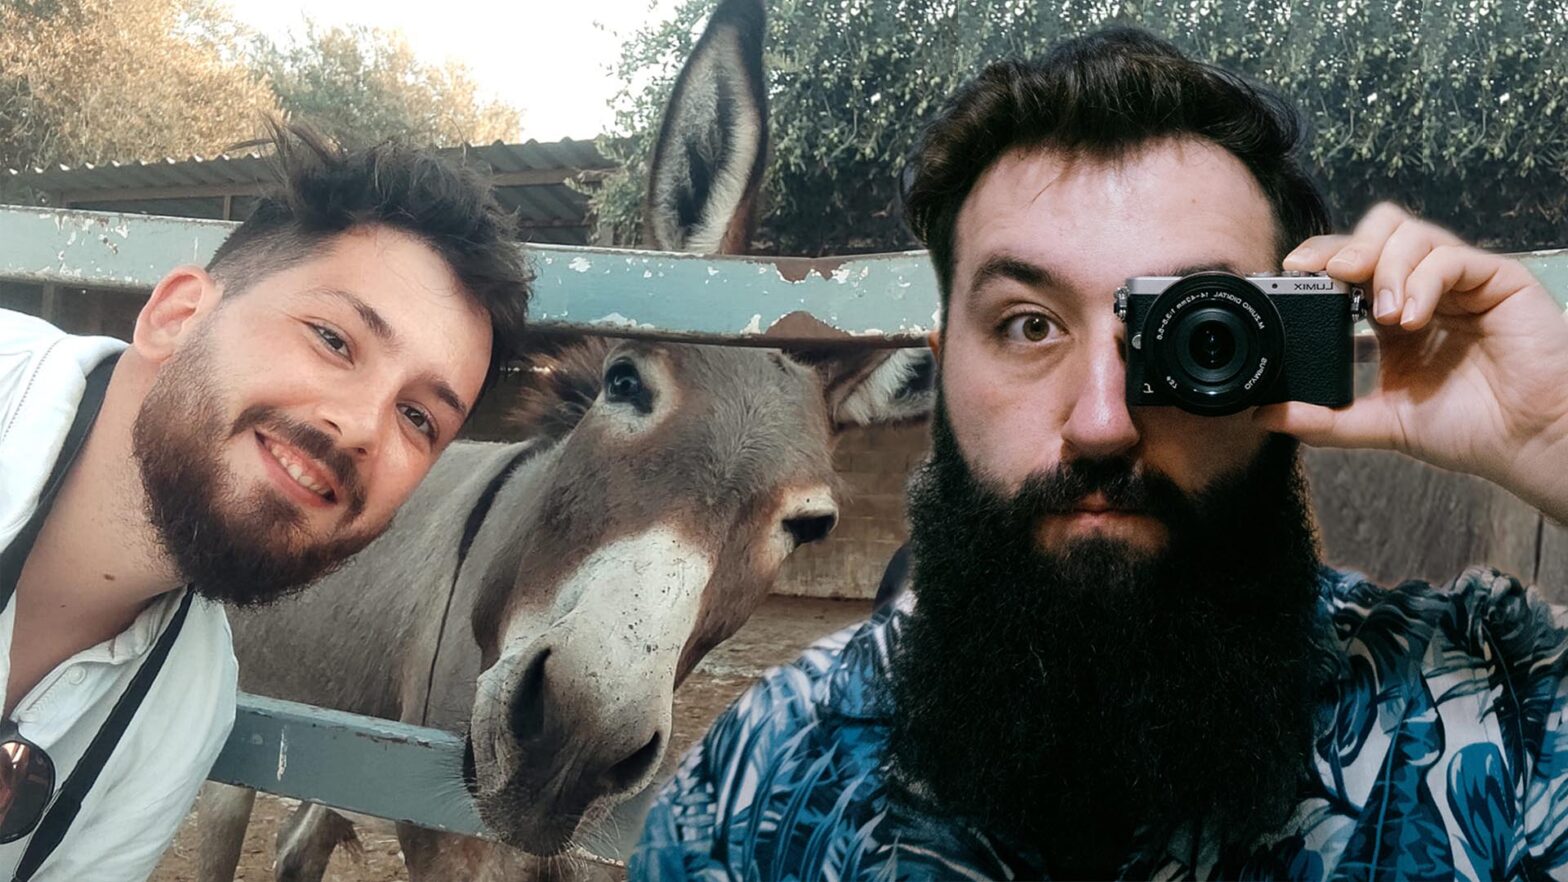 Fotomontaż. Po lewej Bartek Zaleśkiewicz pozuje razem z osłem, który jest w zagrodzie. Po prawej Mateusz Matyasik pozuje z małym aparatem fotograficznym, który przykłada do oka.